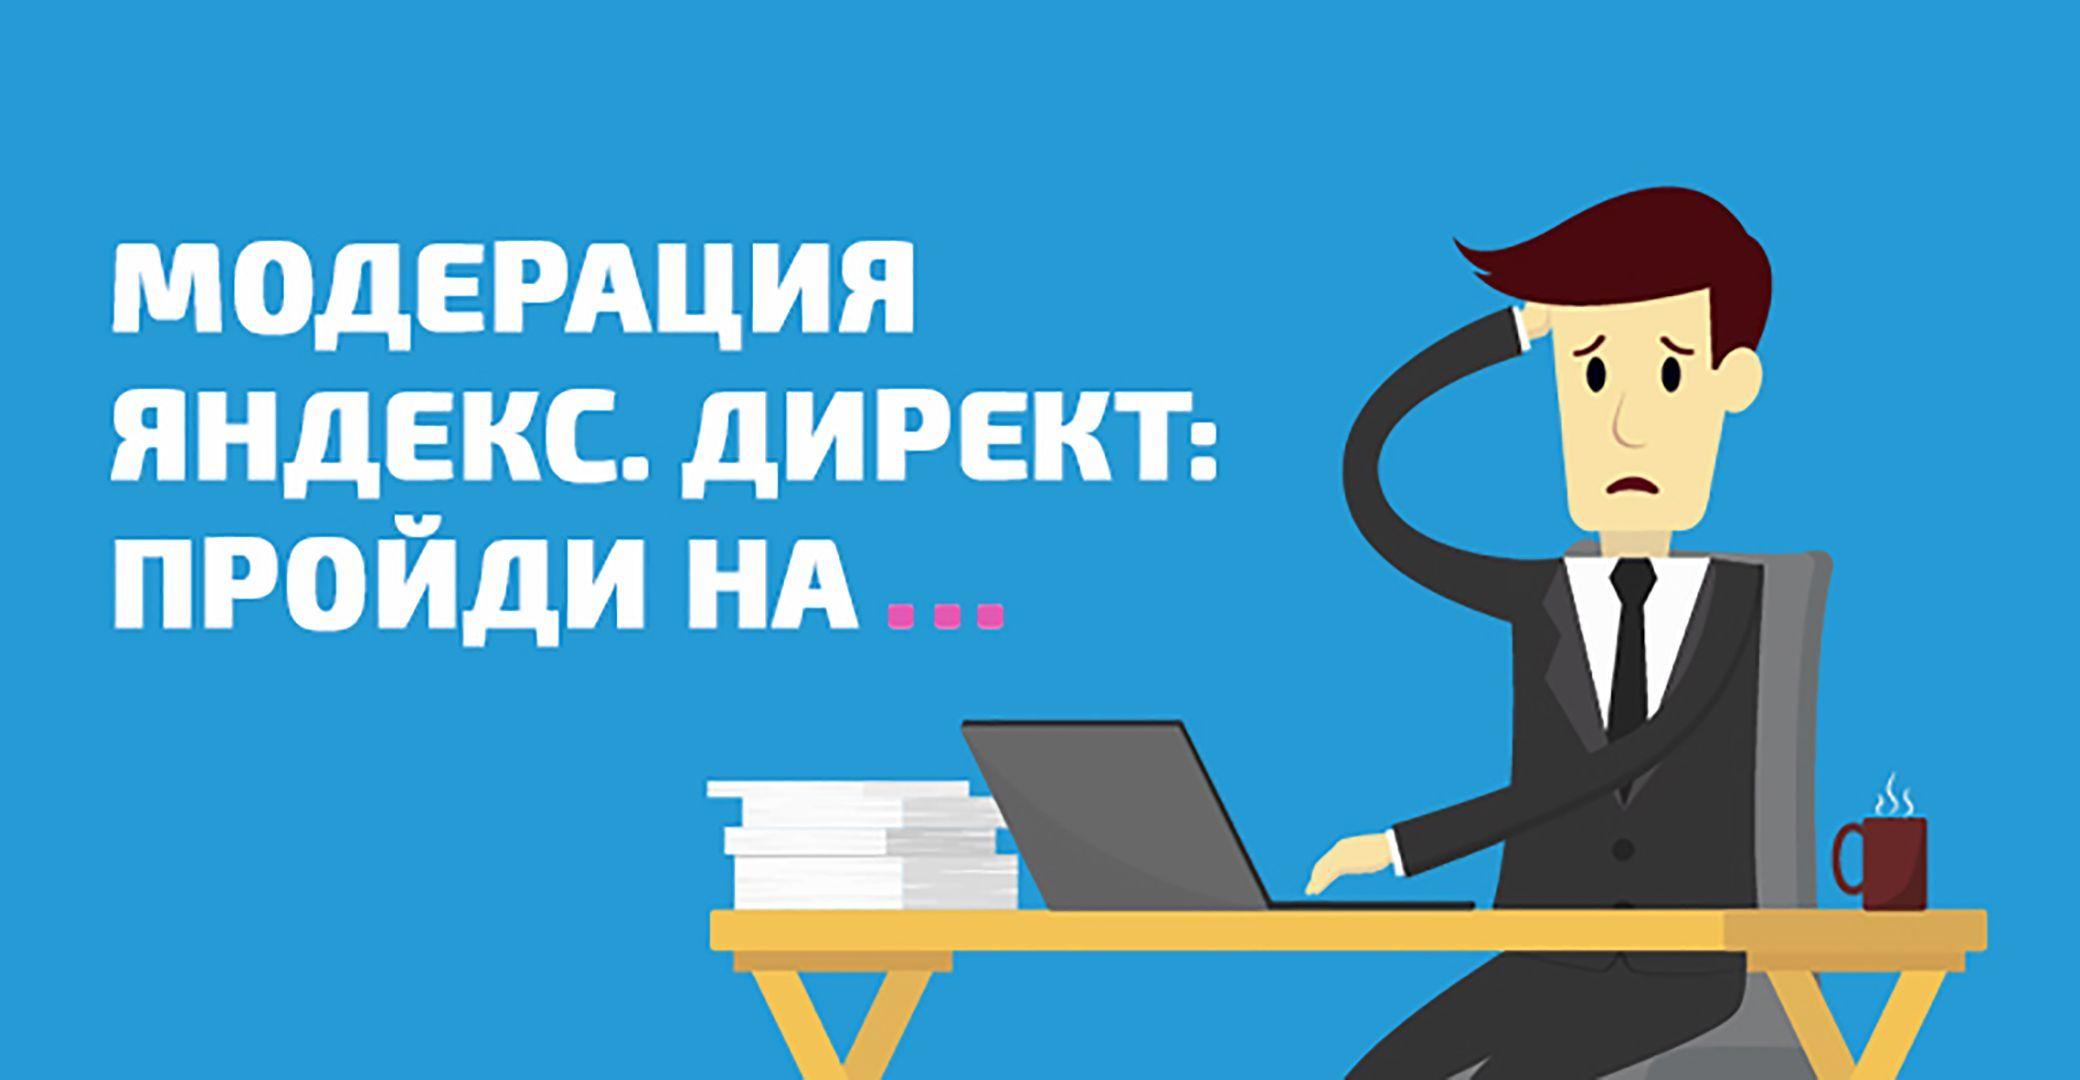 Yandex.Direct - не сможет потеснить AdWords